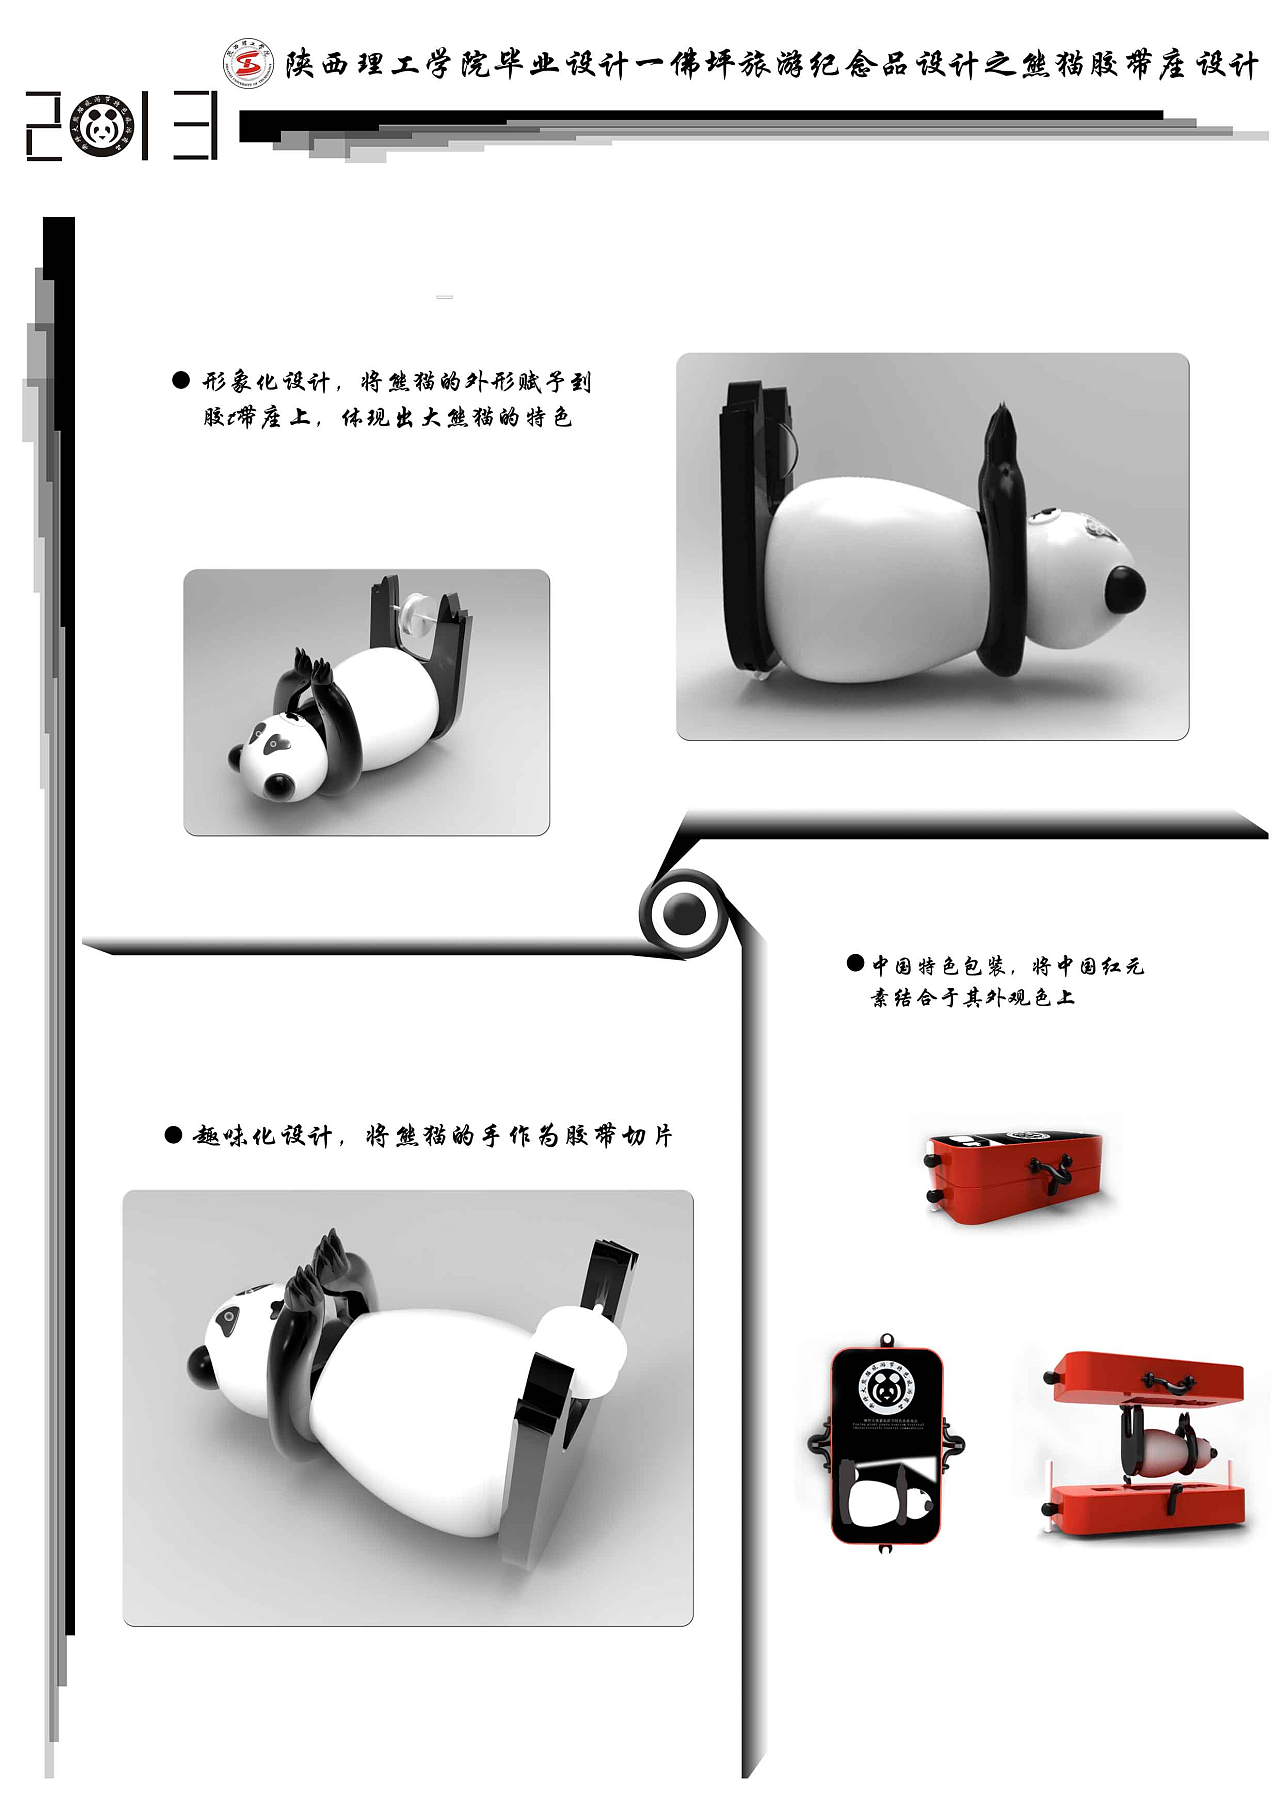 熊猫旅游纪念品设计#陕西理工学院#|工业\/产品